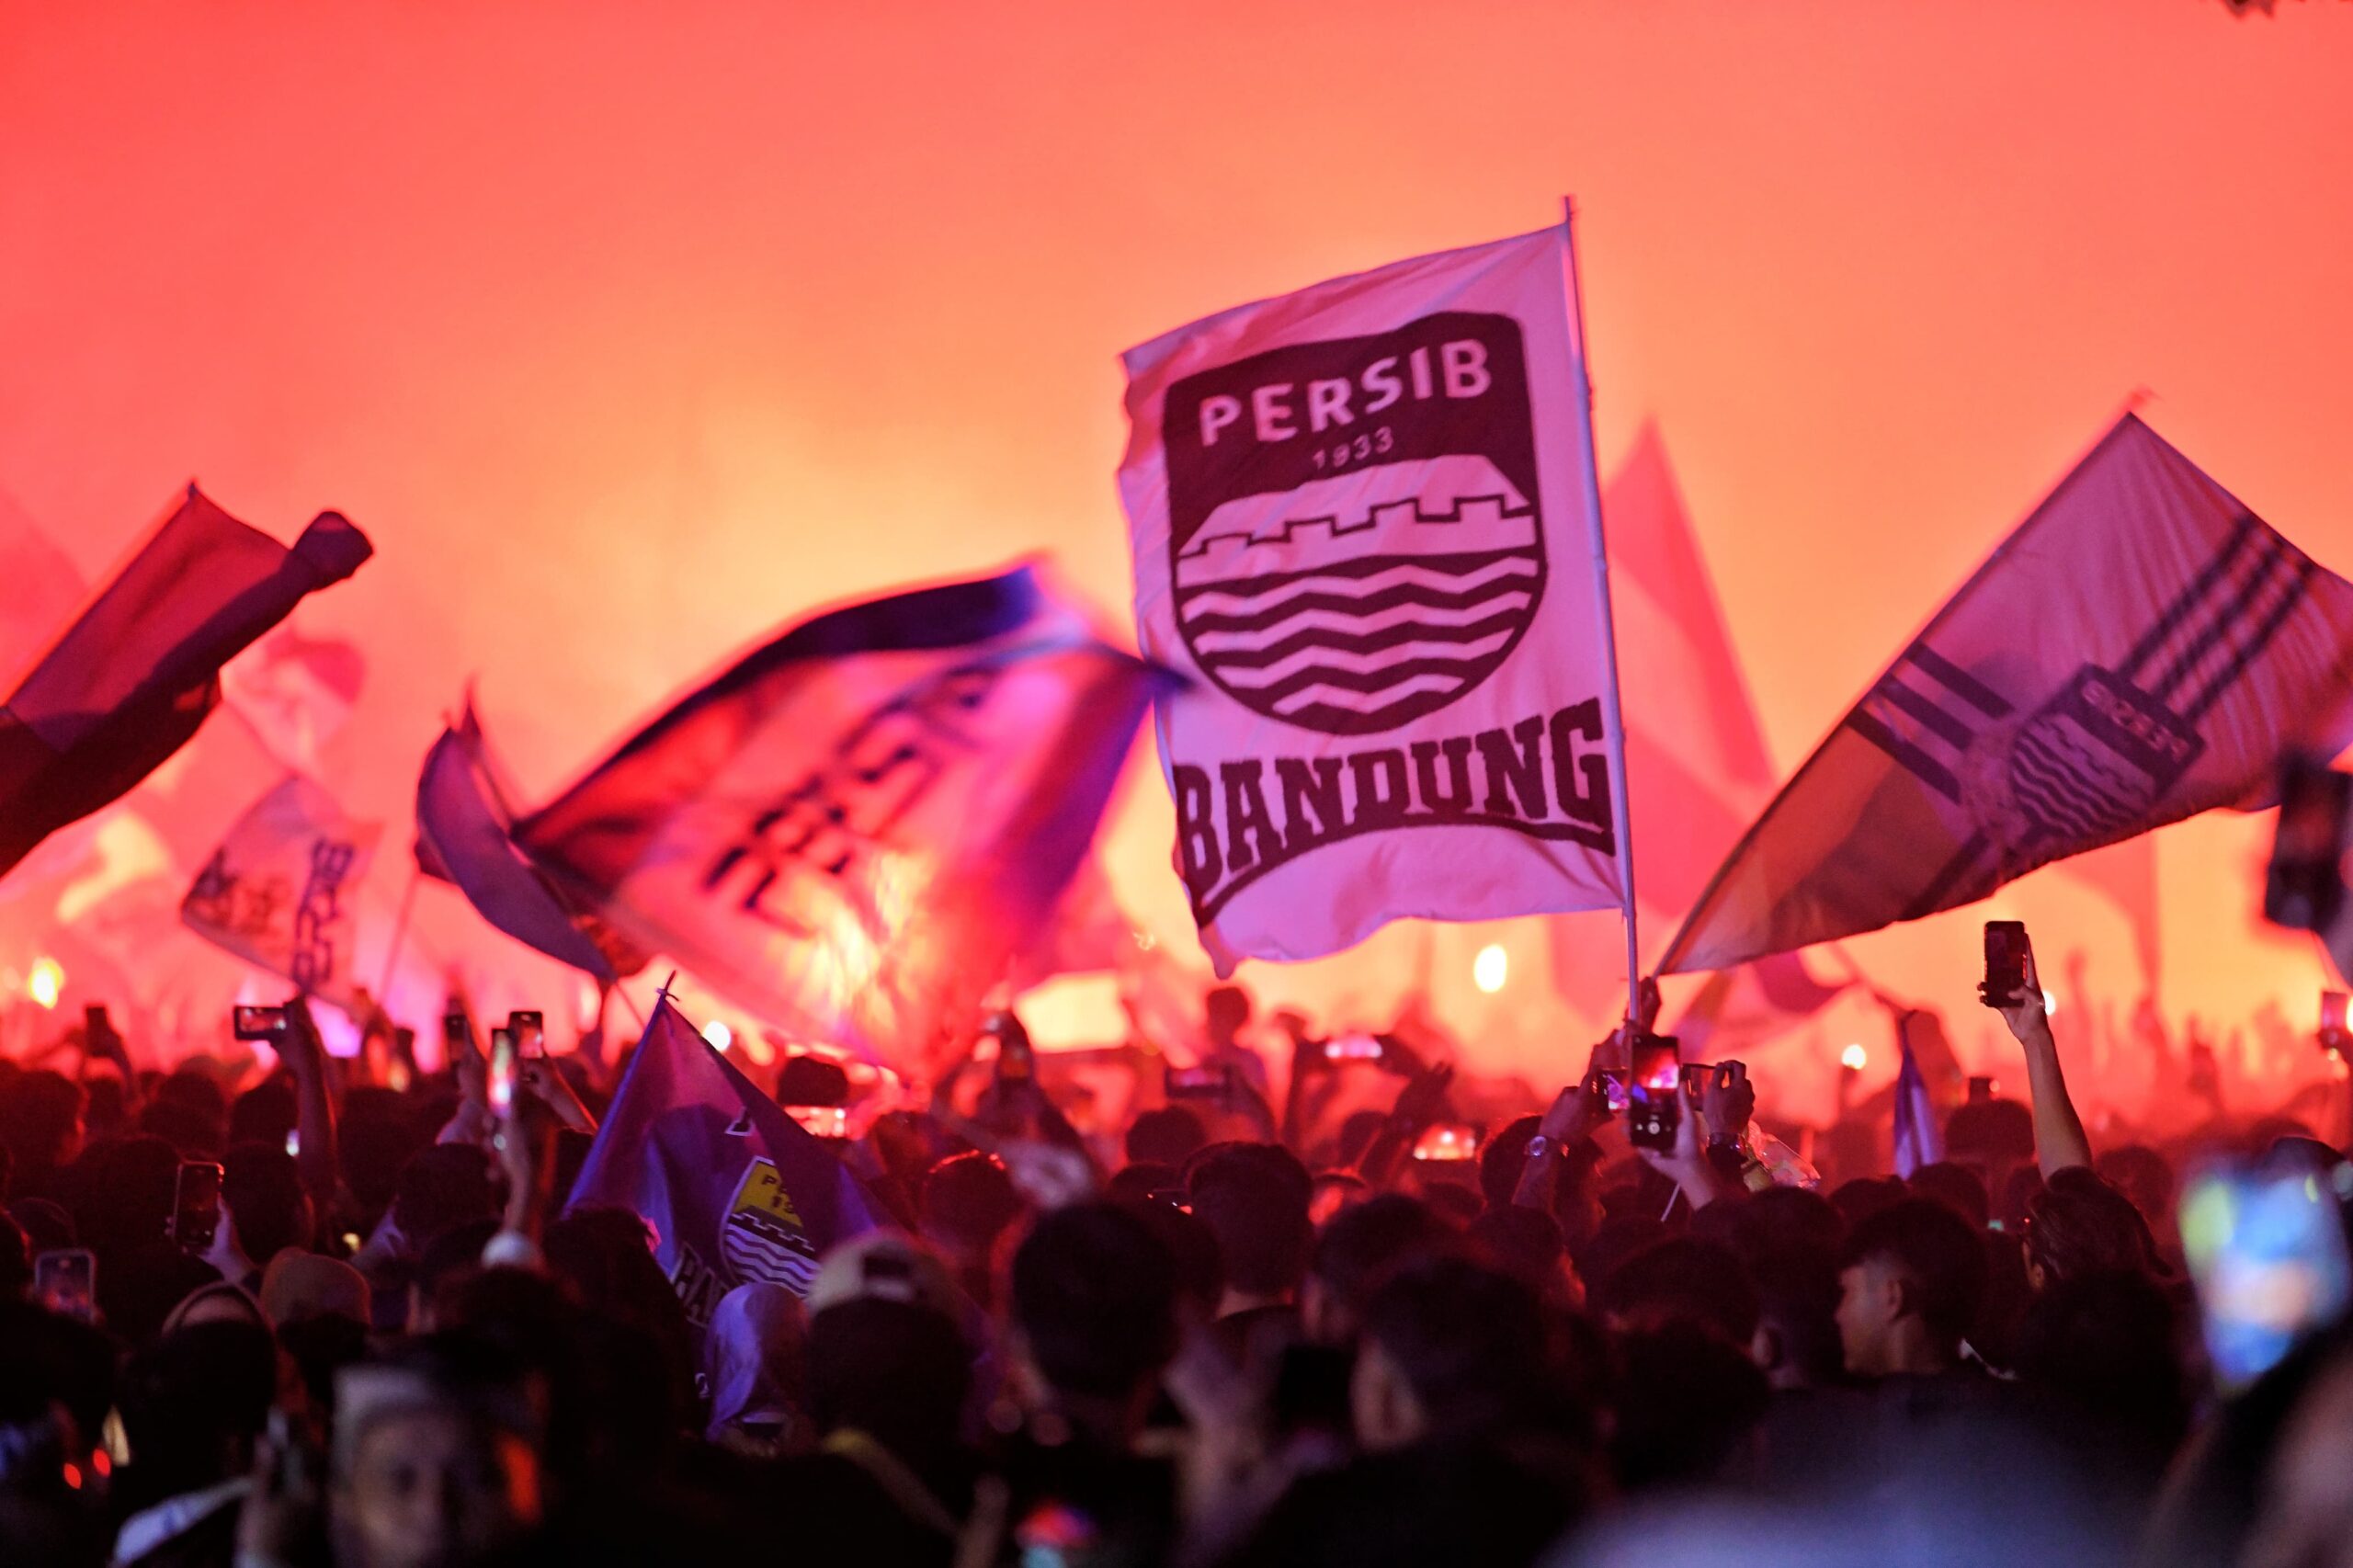 Raih Juara Liga 1, Persib Akan Diarak Keliling Kota Bandung